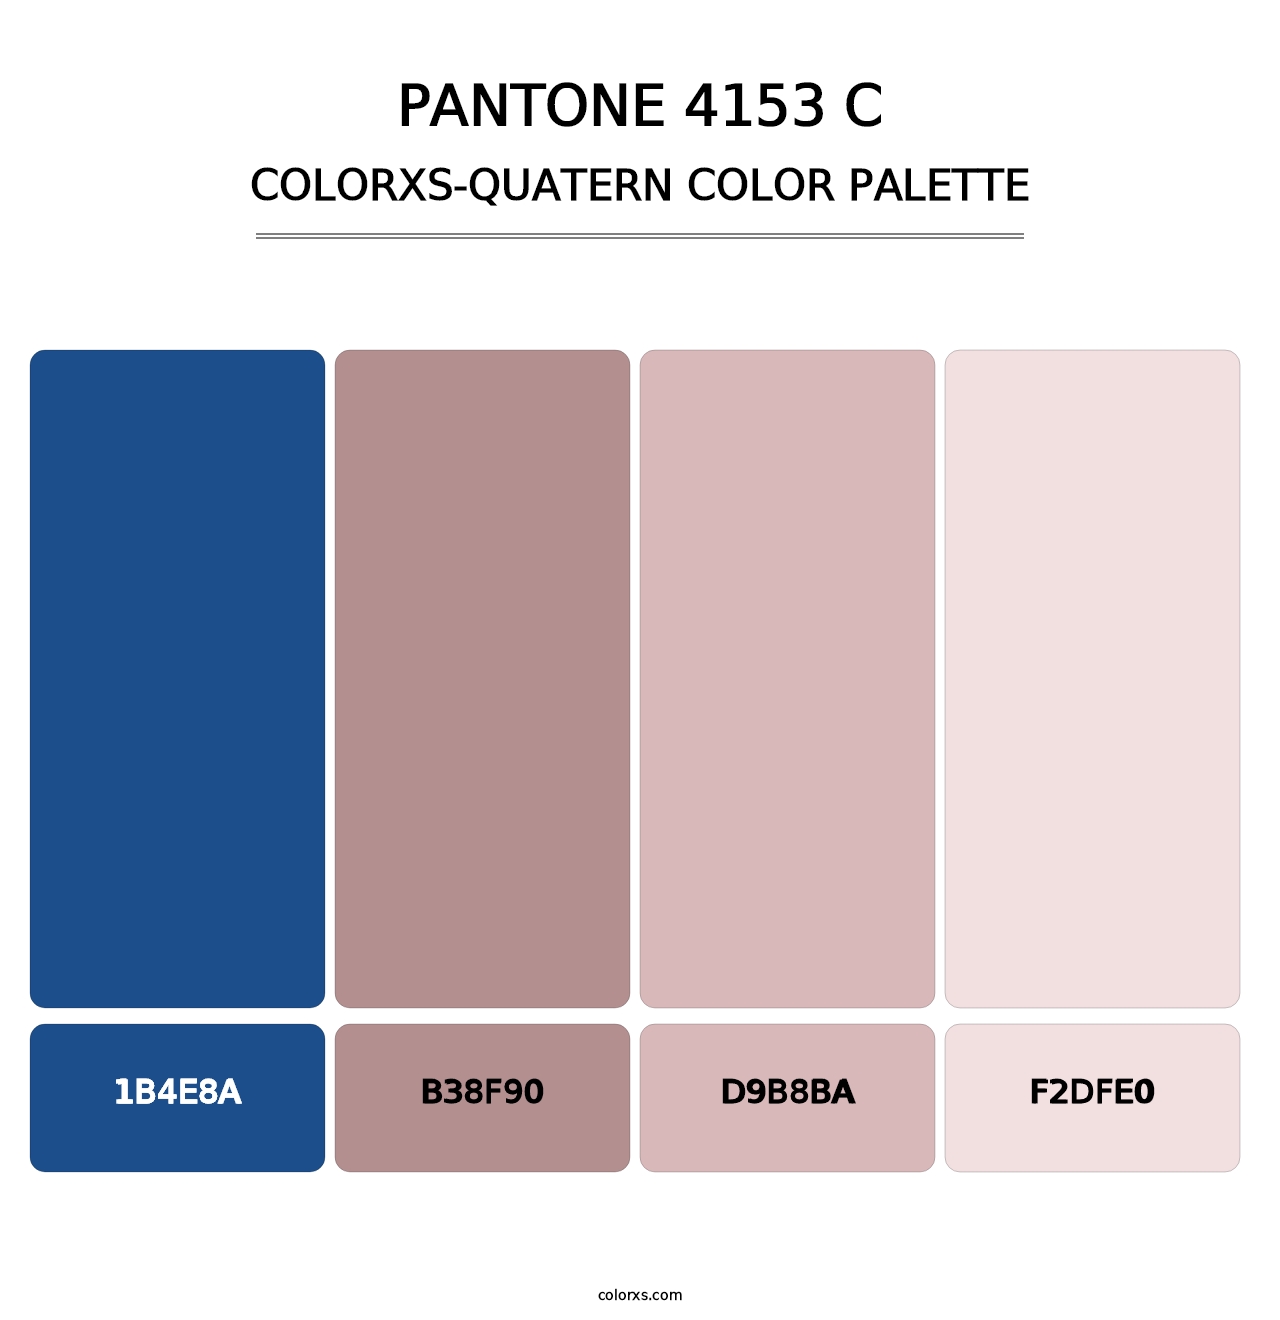 PANTONE 4153 C - Colorxs Quatern Palette